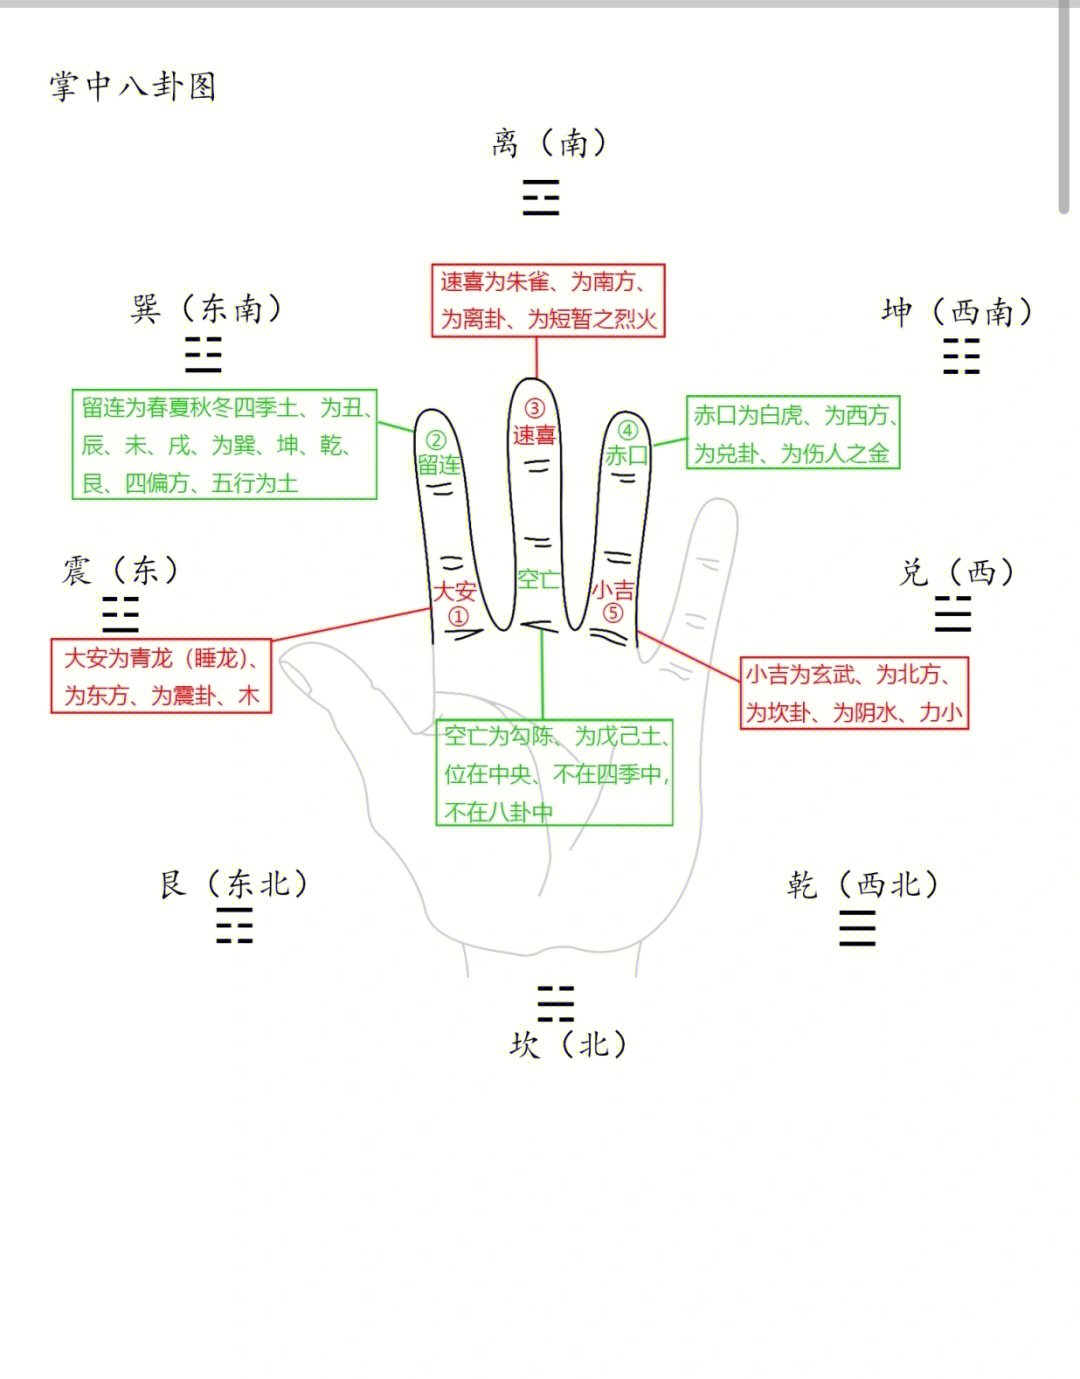 六种掌诀定位(1)大安定位—食指根部(2)留连定位—食指指尖(3)